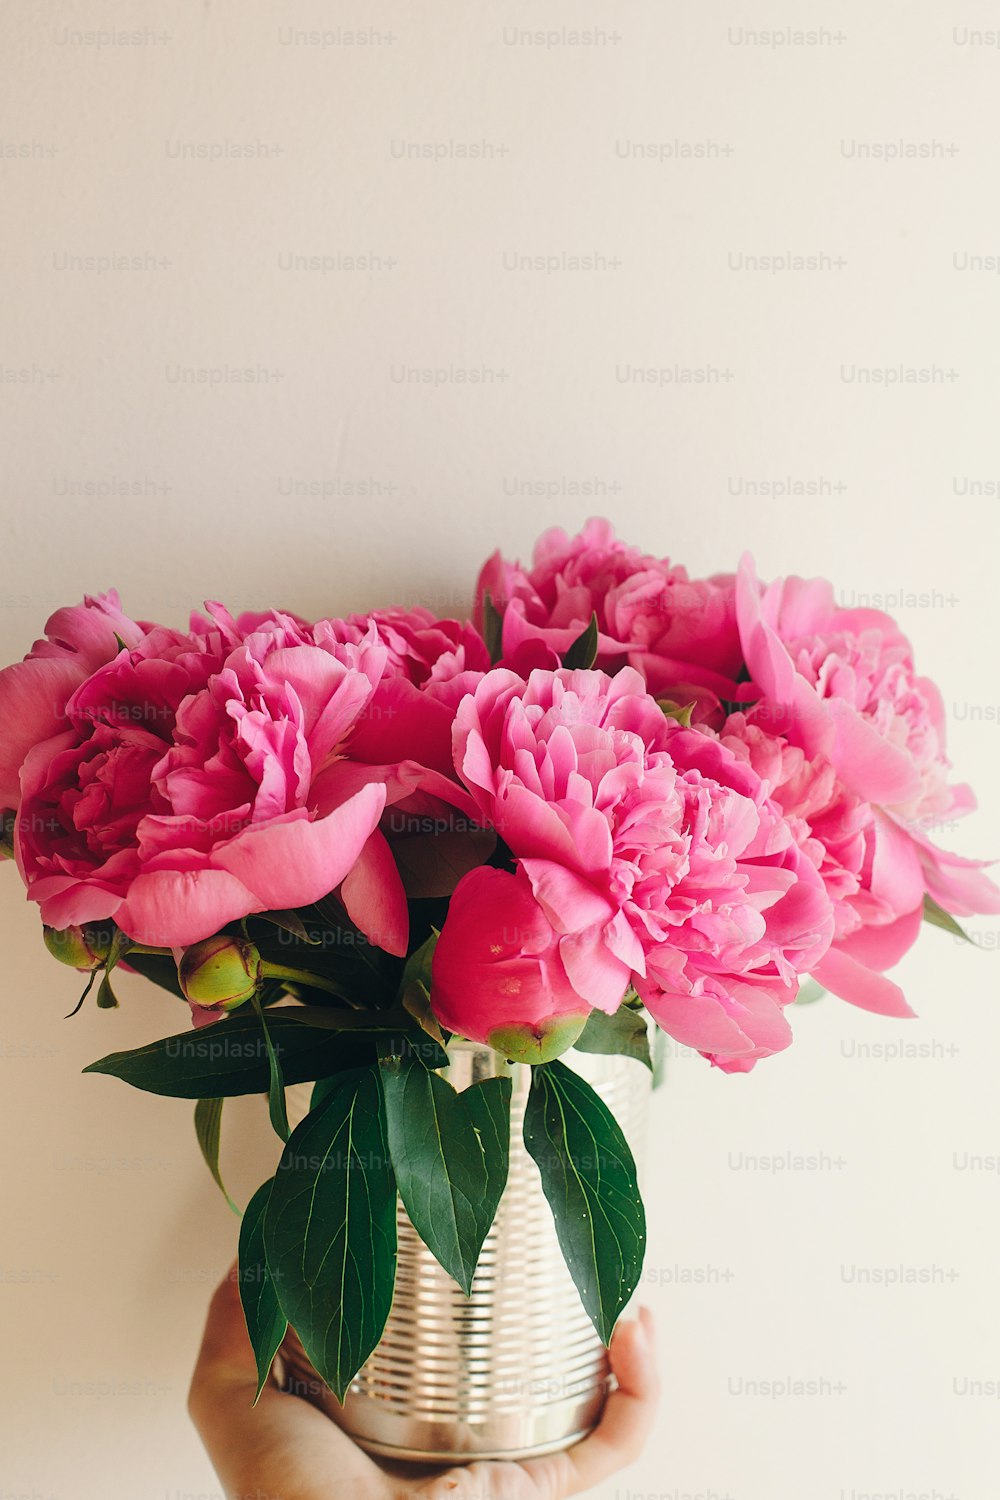 mano che tiene il bouquet di peonie rosa in lattina metallica su sfondo bianco rustico, spazio per il testo. modello di biglietto d'auguri floreale. concetto di buona festa della mamma. fiori rosa, immagine rurale